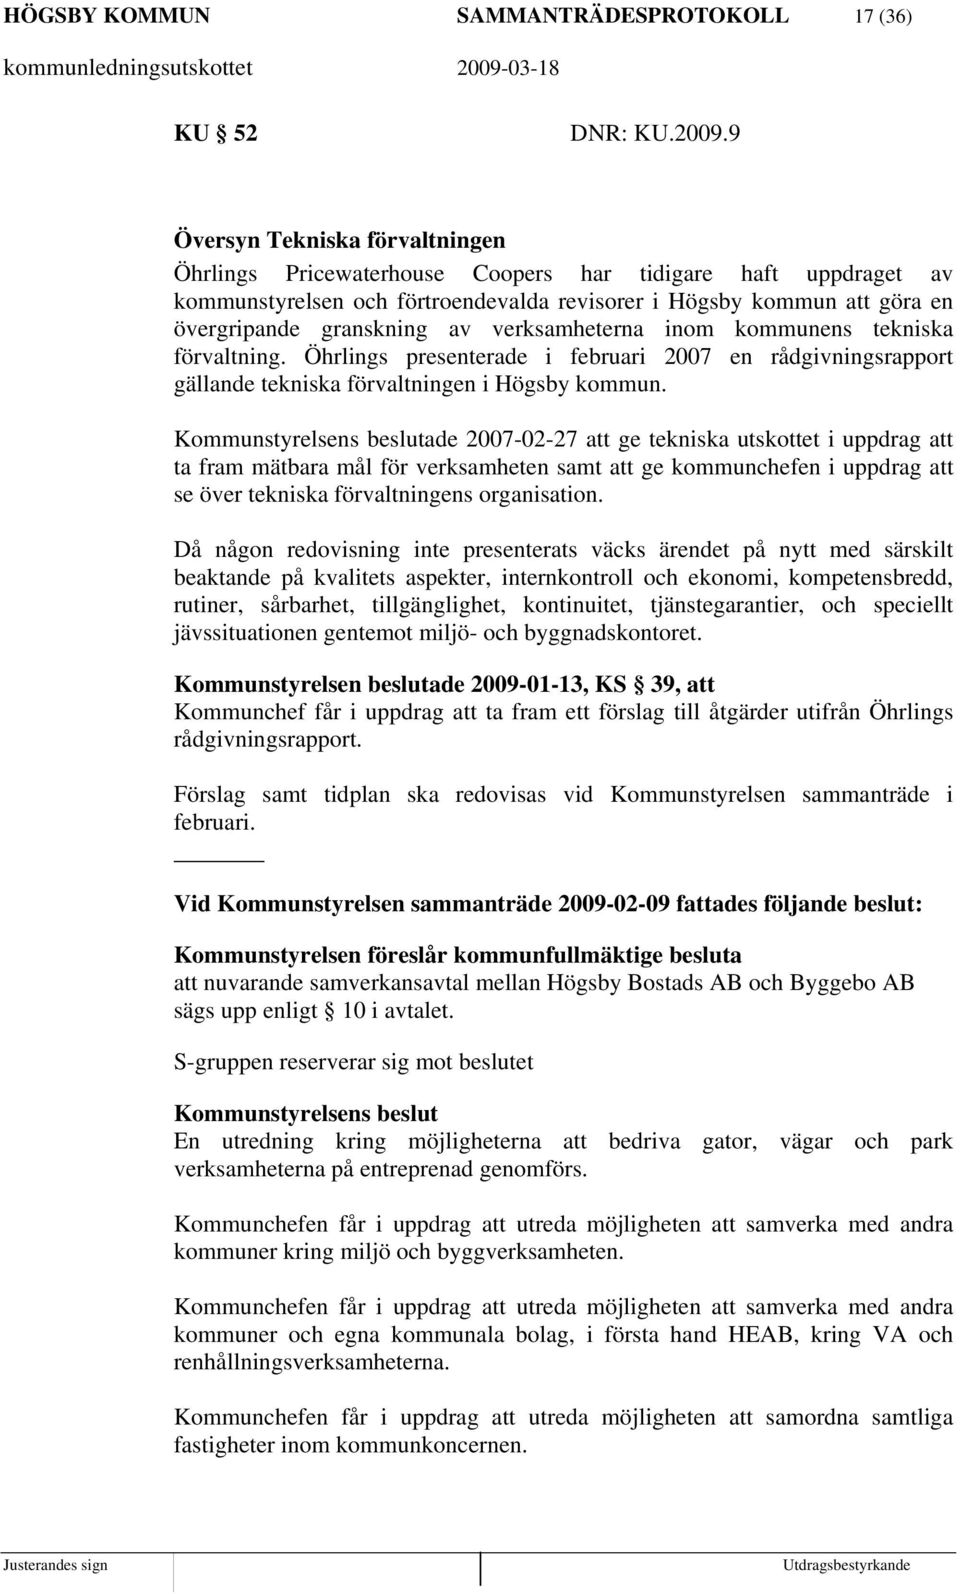 verksamheterna inom kommunens tekniska förvaltning. Öhrlings presenterade i februari 2007 en rådgivningsrapport gällande tekniska förvaltningen i Högsby kommun.